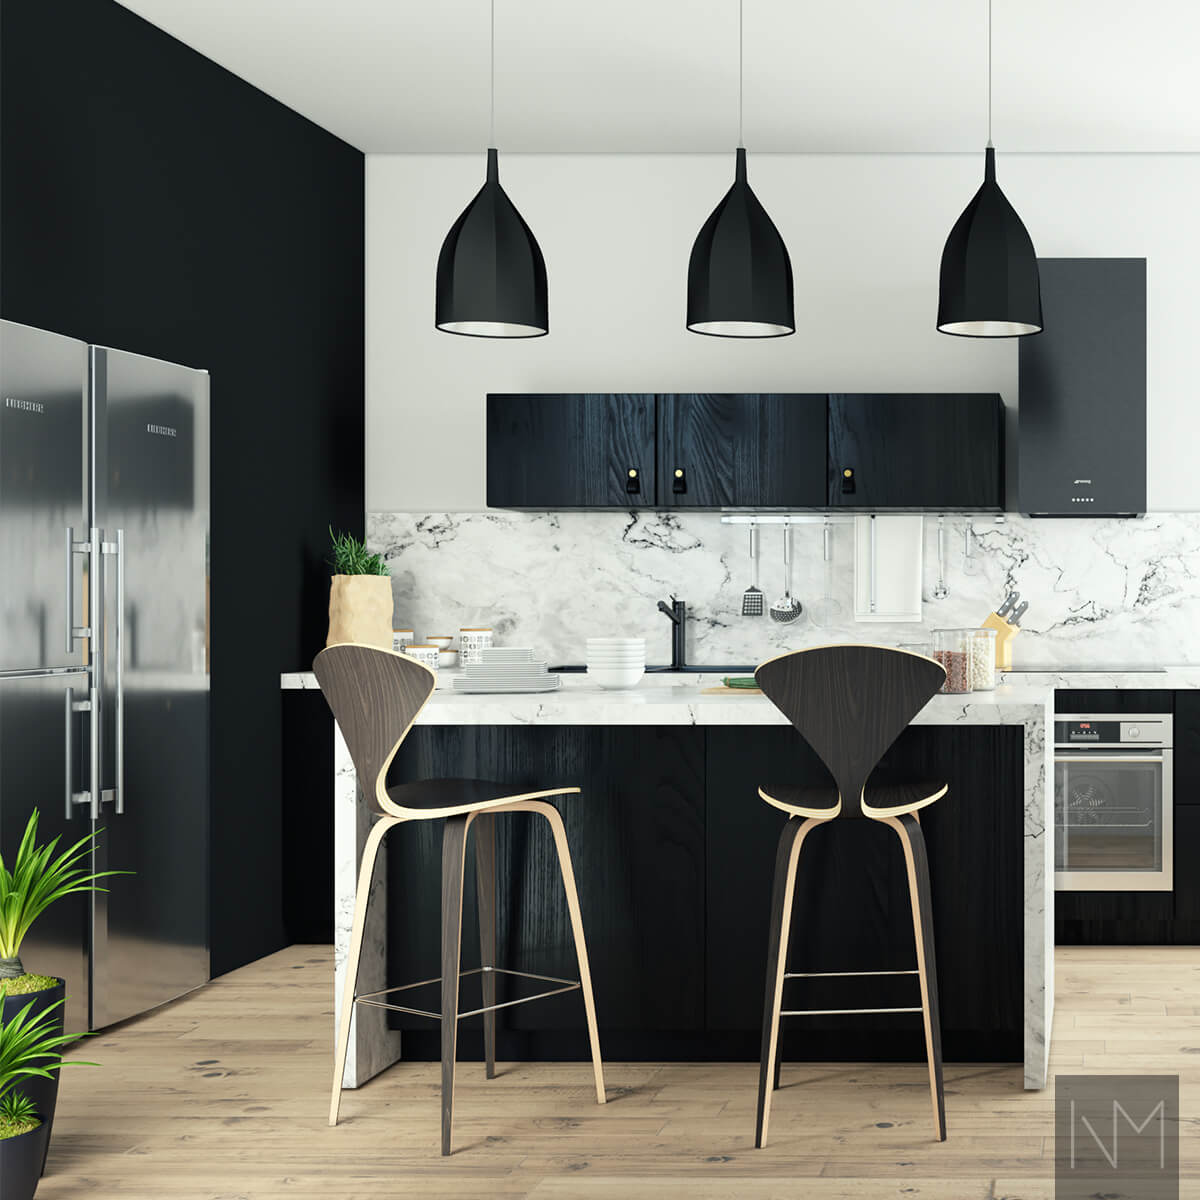 Keukendeuren in Nordic design. Zwarte ash - gekleurd. Handgreep Loop zwart leer met koperen knop